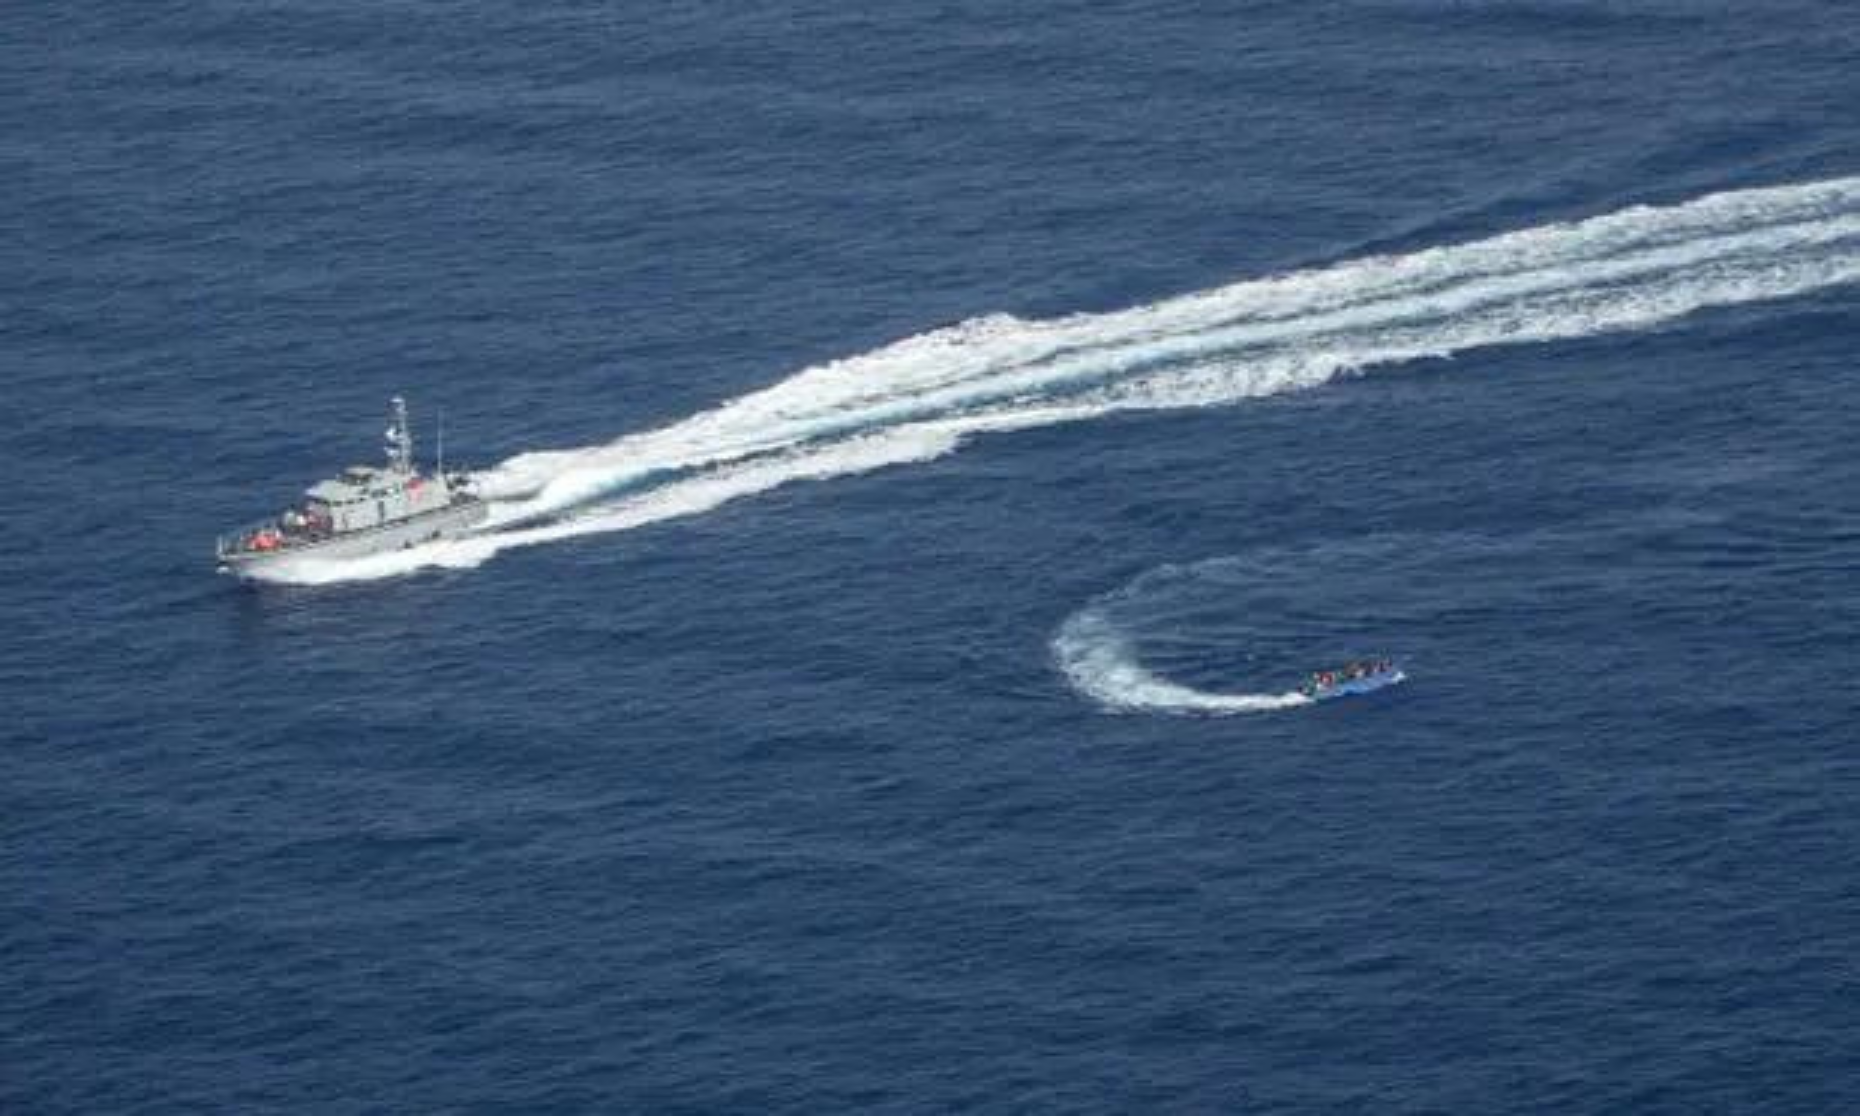 الصورة: ما يسمى خفر السواحل الليبي يلقي أشياء على قارب يحمل مهاجرين ويعلق حبلًا بعوامة خلف القارب للقبض عليه، بالإضافة إلى إطلاق النار ومحاولة الاصطدام به، 30 يونيو 2021. Kai von Kotze/Sea-Watch/AFP/Getty ©